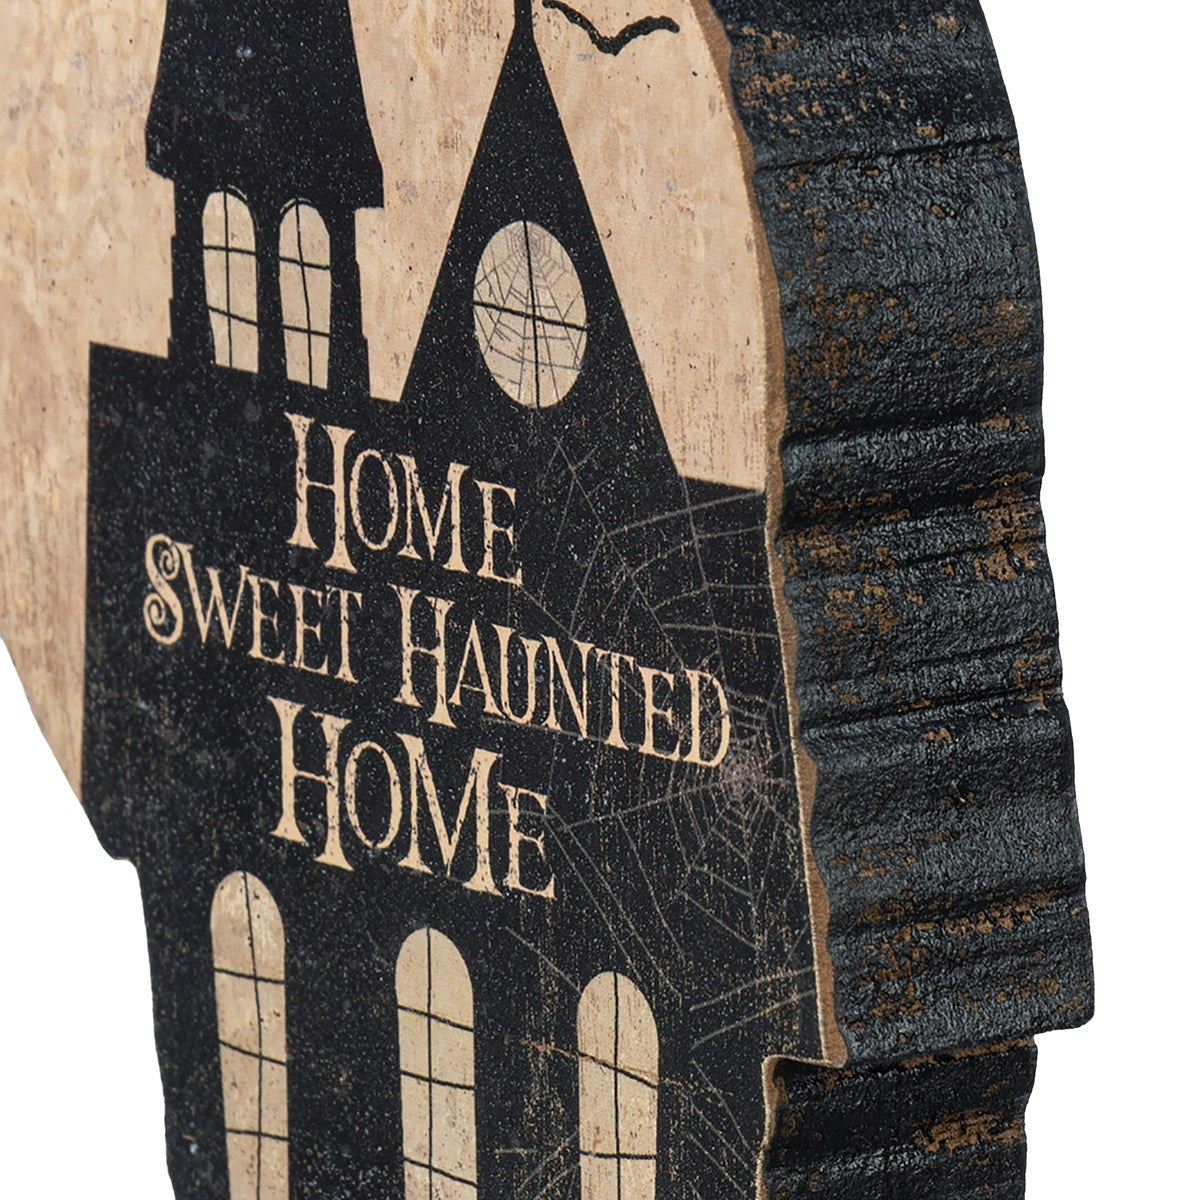 Home Sweet Haunted Home 8" Chunky Shelf Sitter